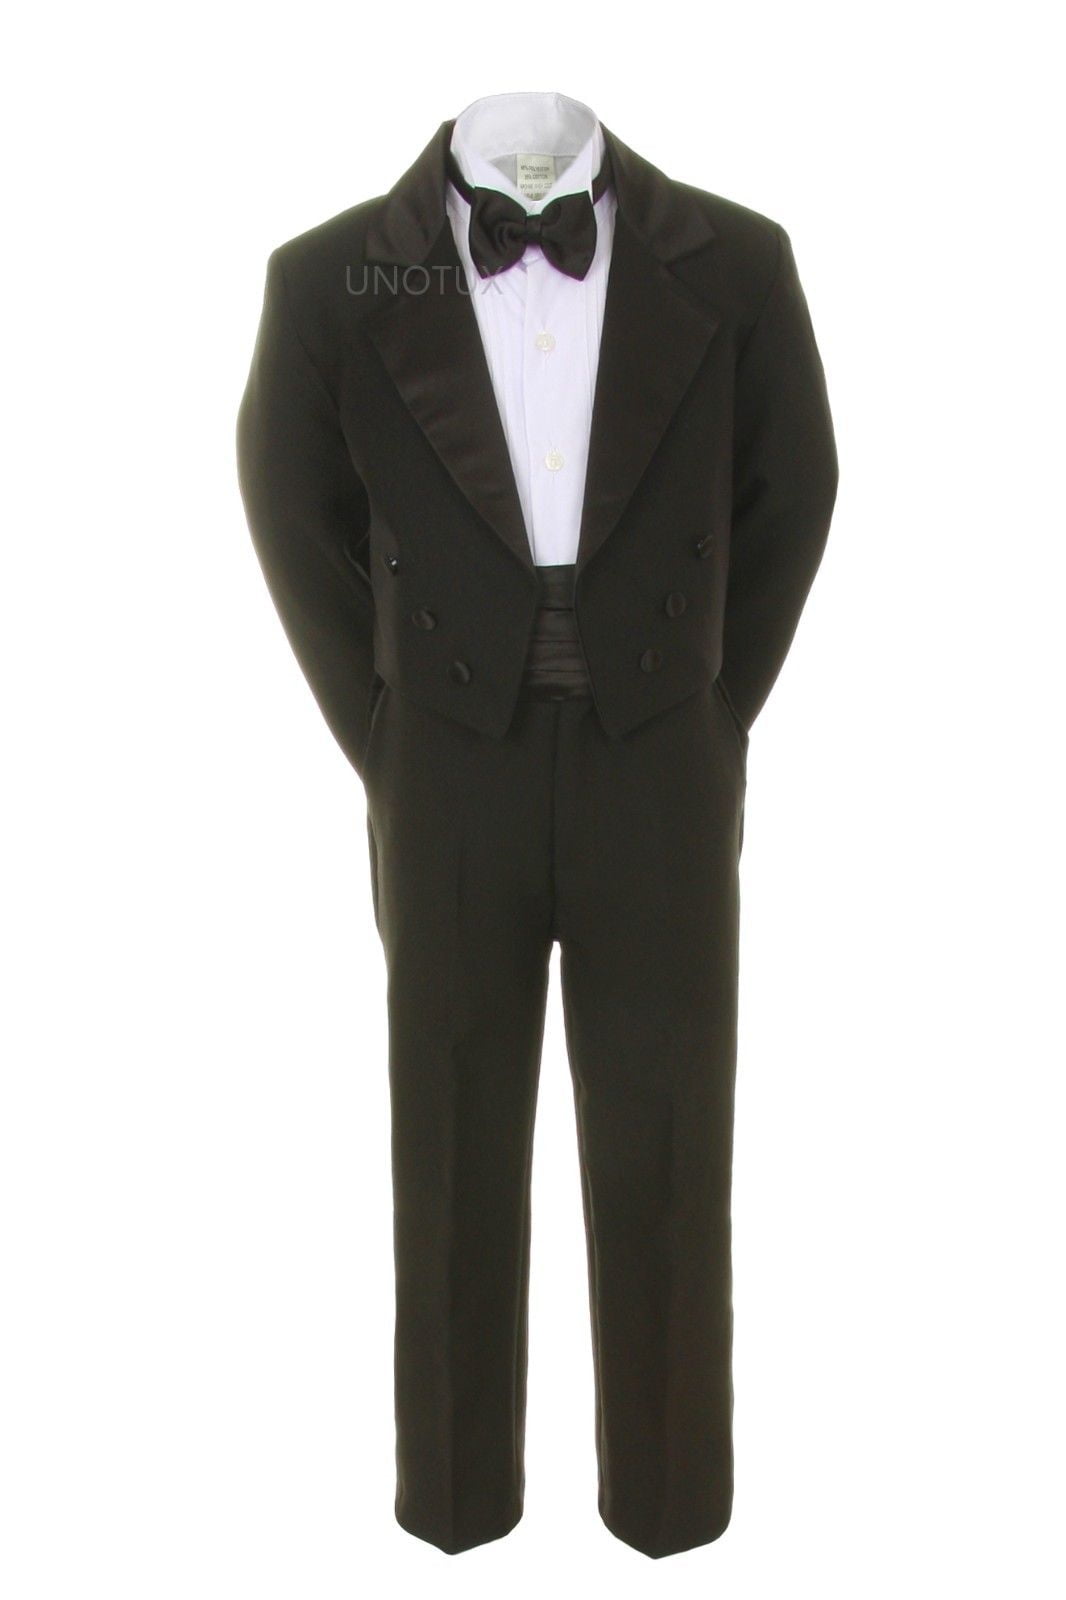 New 5pc Baby Kid Teen Boy Wedding Formal Tuxedo Vest Cummerbund Suit Black S-20 